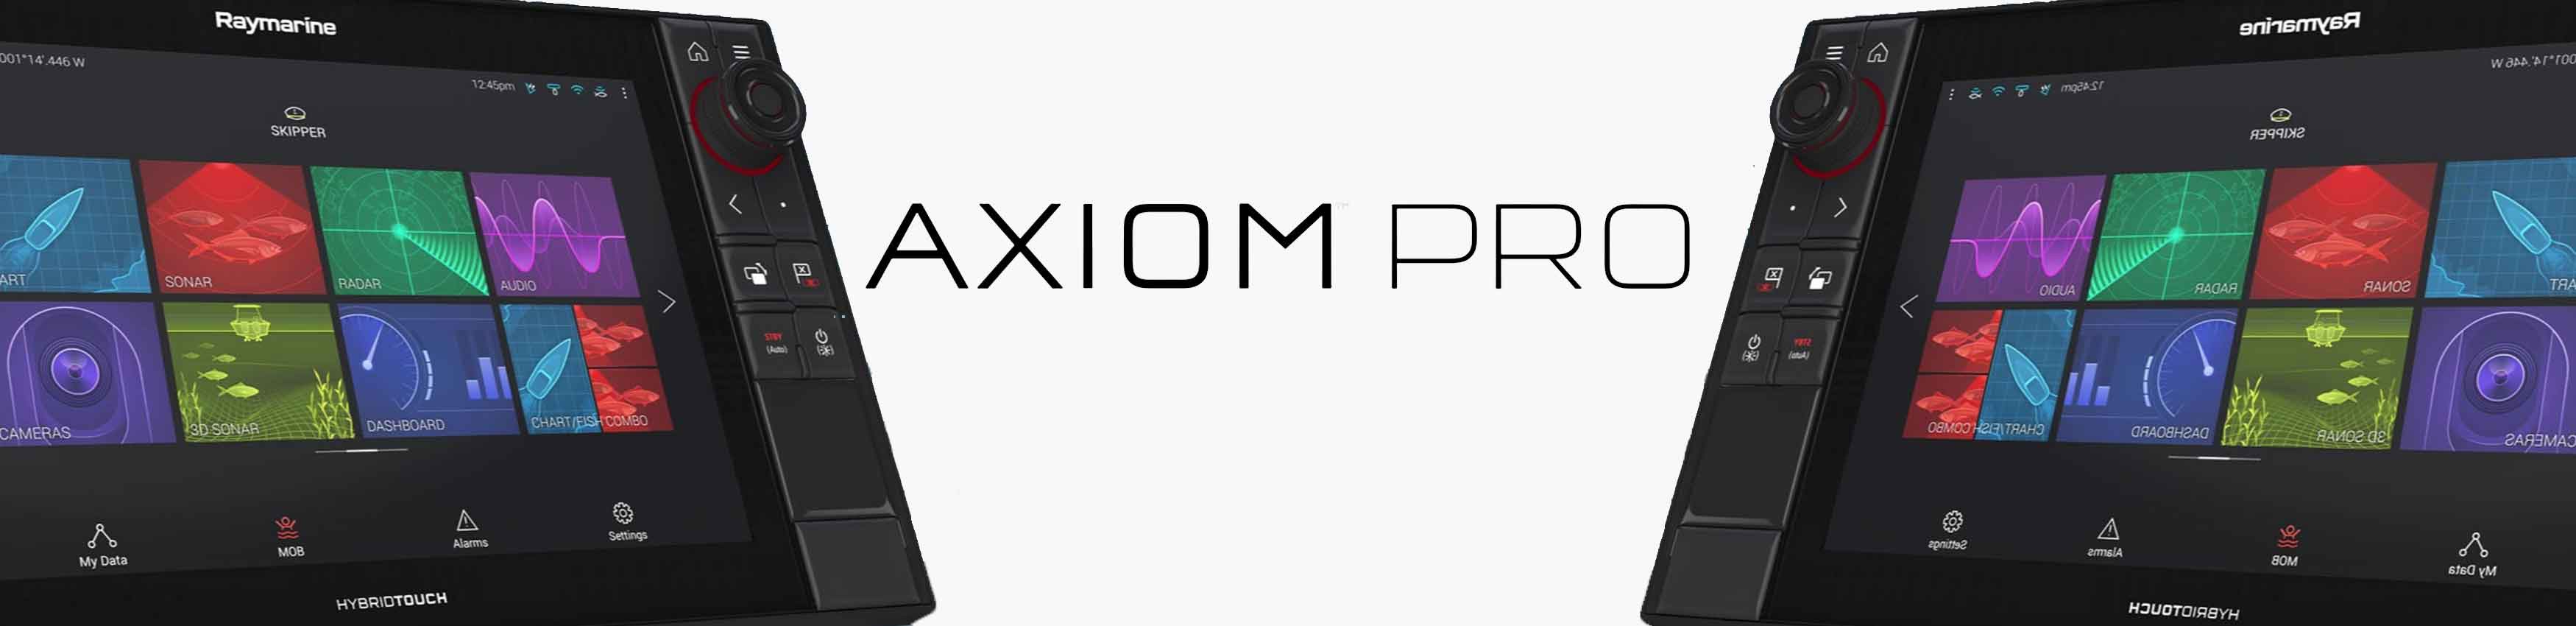 Axiom Pro